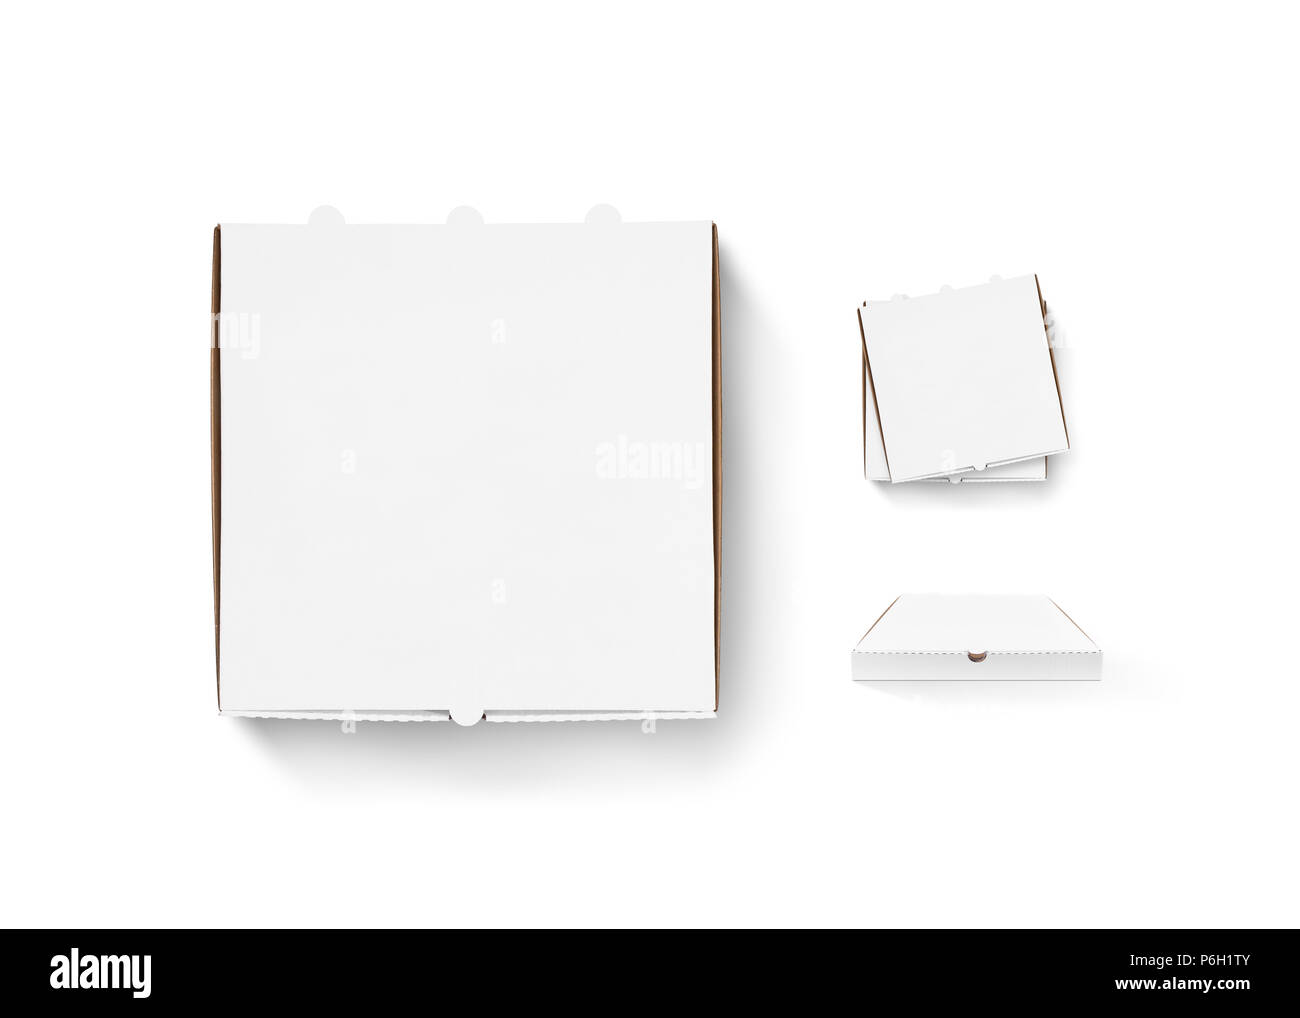 Leere pizza box Design mock up Set isoliert. Kartonpackungen pizza box Lieferung klar mockup. Heiße pizza box Vorlage löschen. Stapel von Kisten Ansicht von oben. Essen container jede Seite. Pizzakartons. Stockfoto